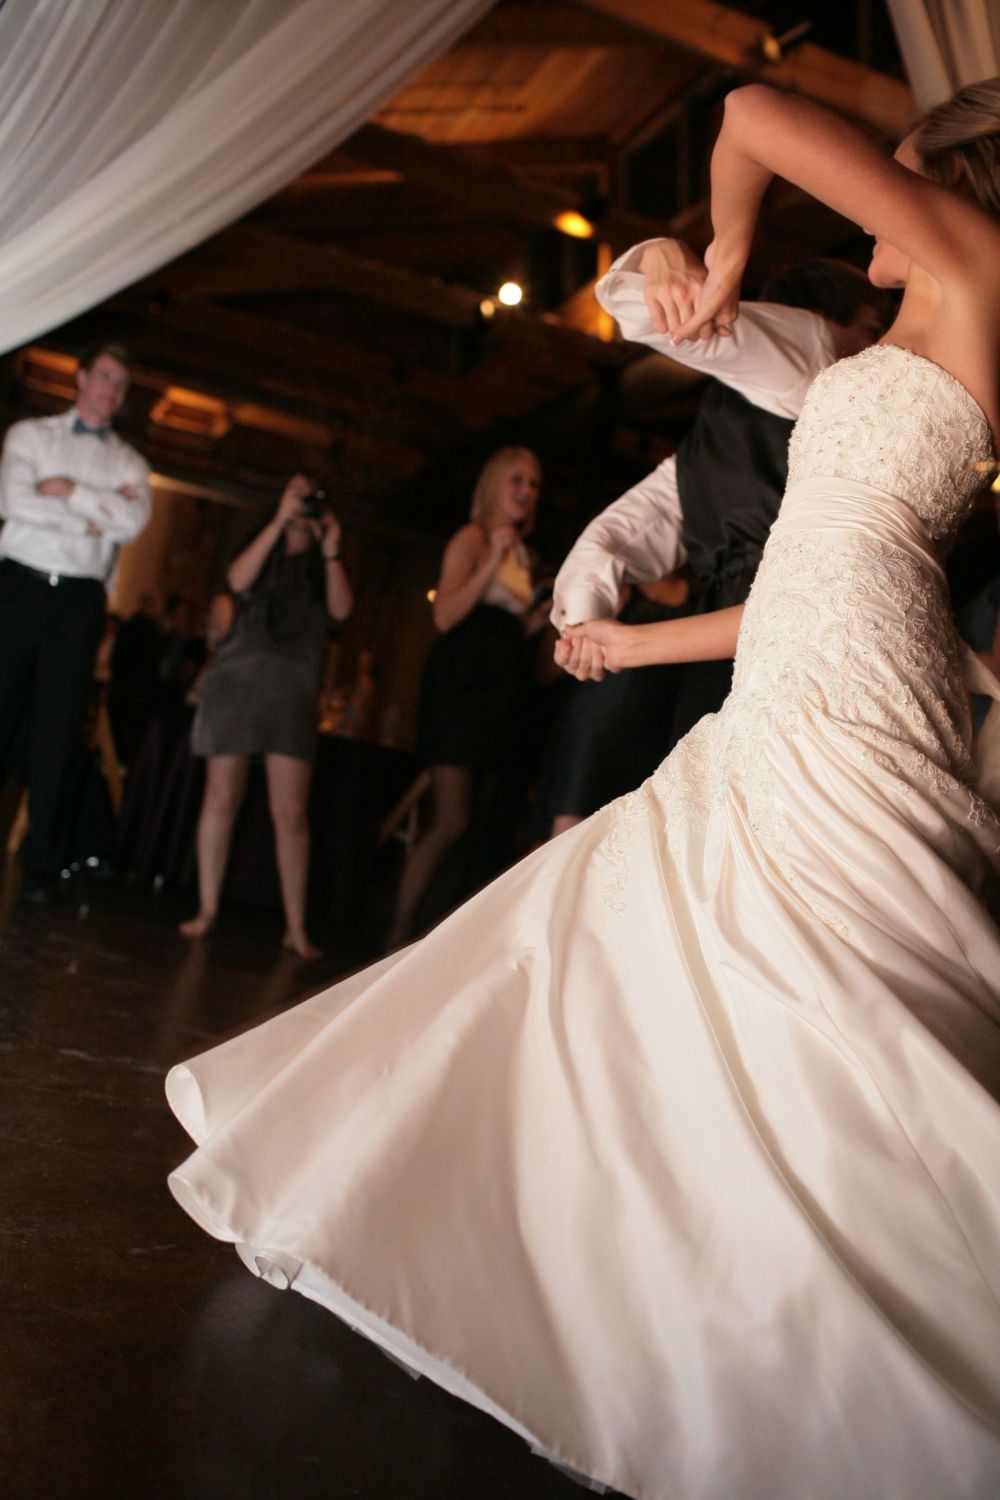 Песня для свадебного танца невесты. Свадебный танец. Свадебный танец жениха и невесты. Танцы на свадьбе. Постановка свадебного танца.